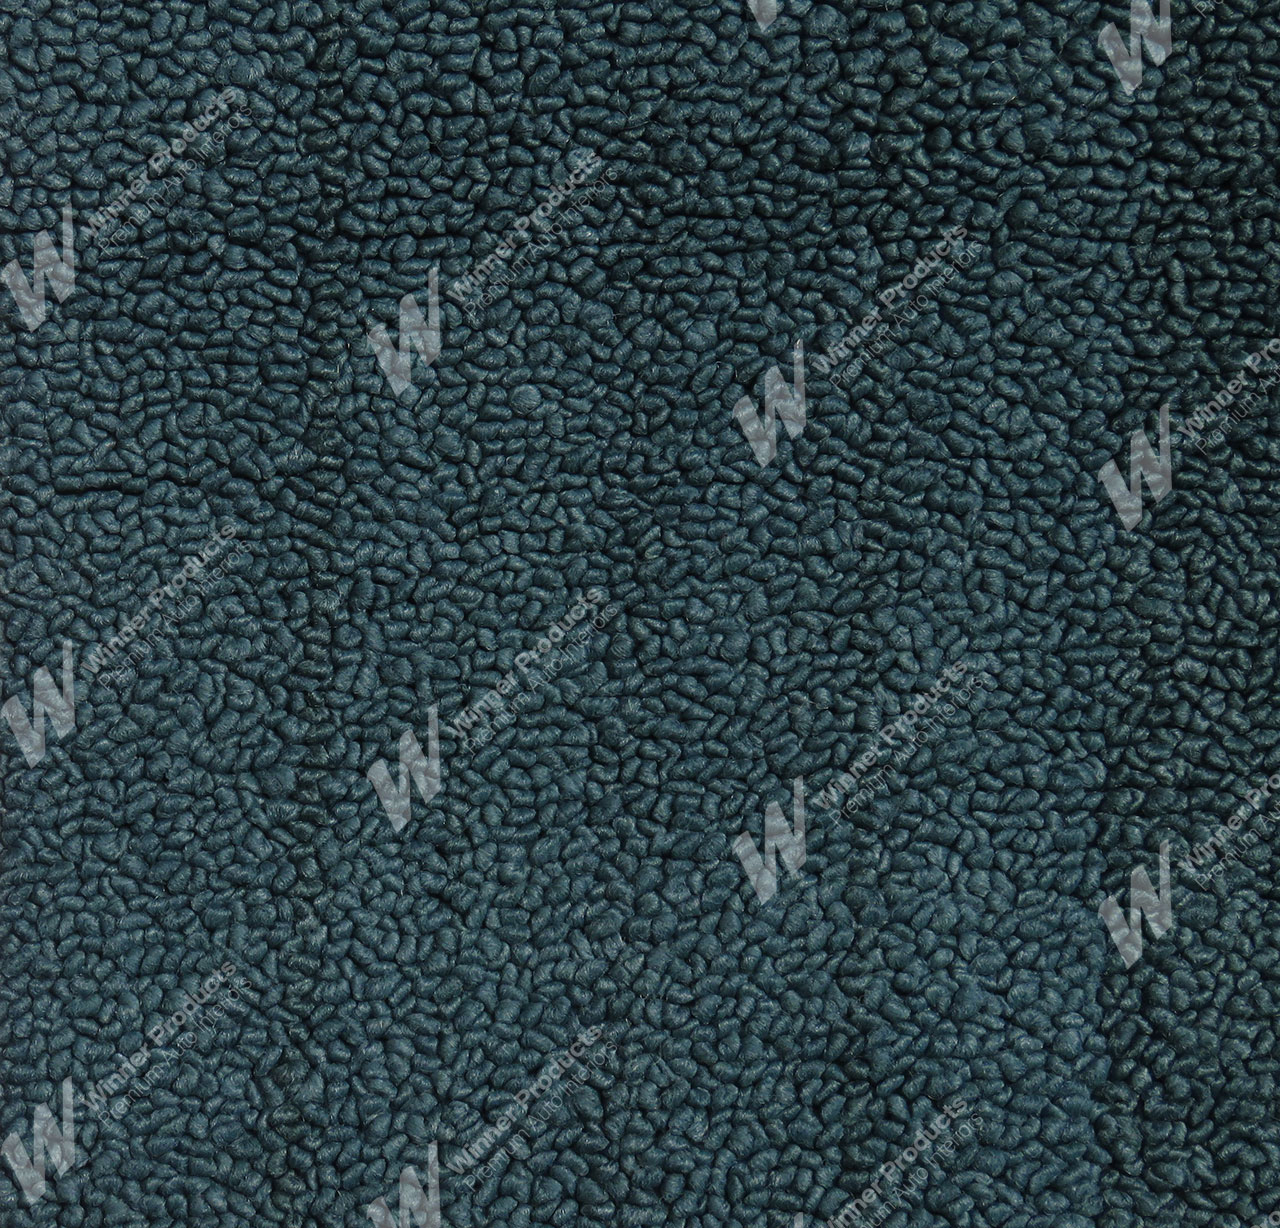 Holden Kingswood HG Kingswood Sedan 13E Turquoise Mist Carpet (Image 1 of 1)